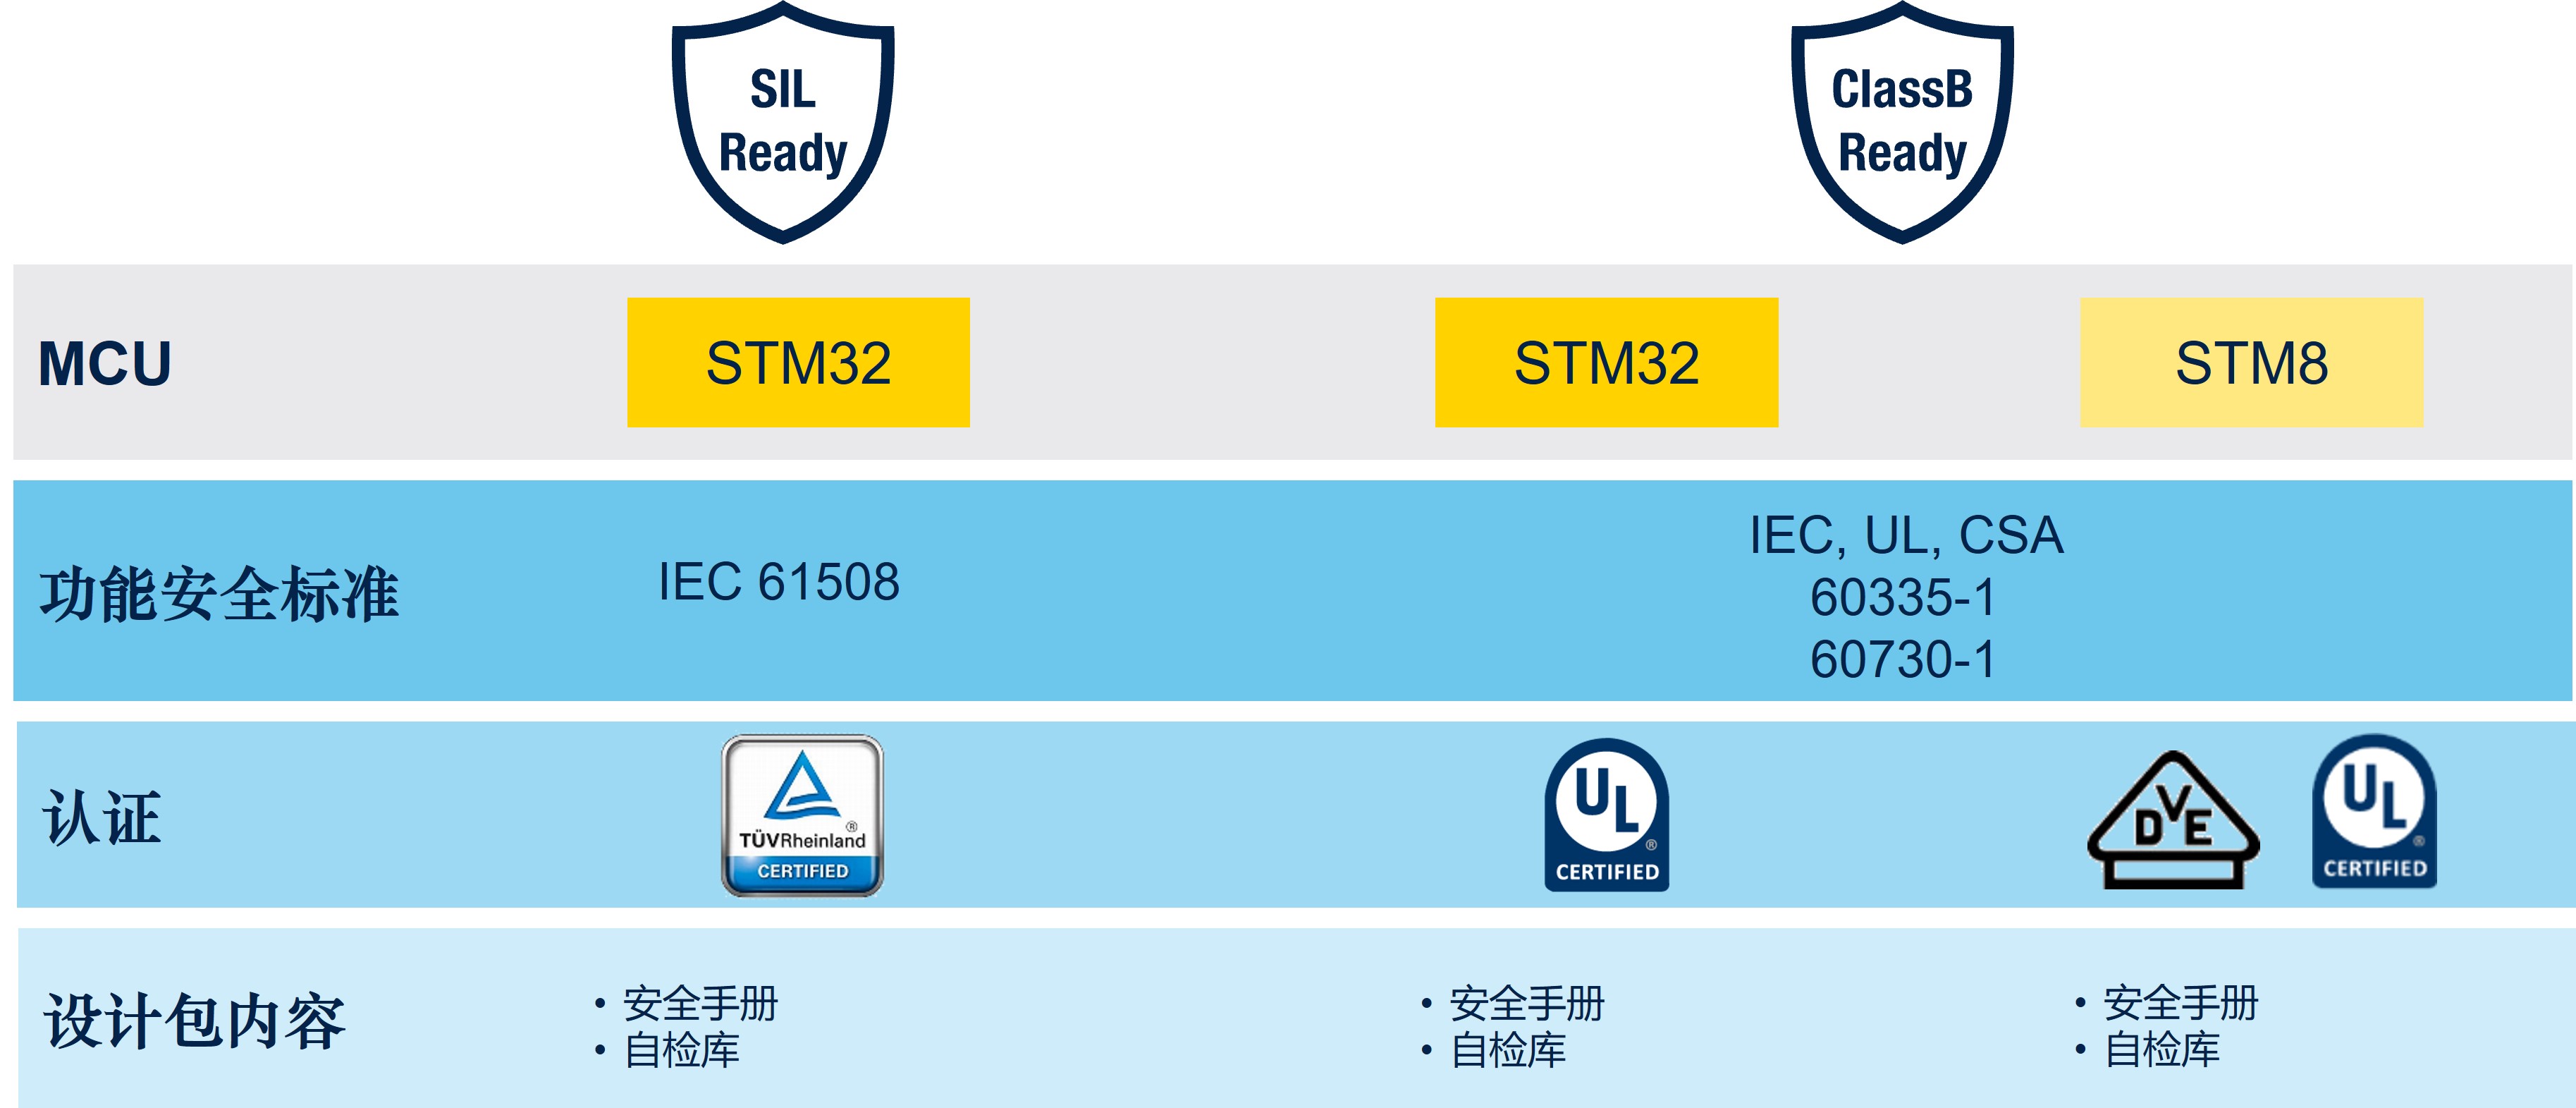 SIL和ClassB功能安全设计包